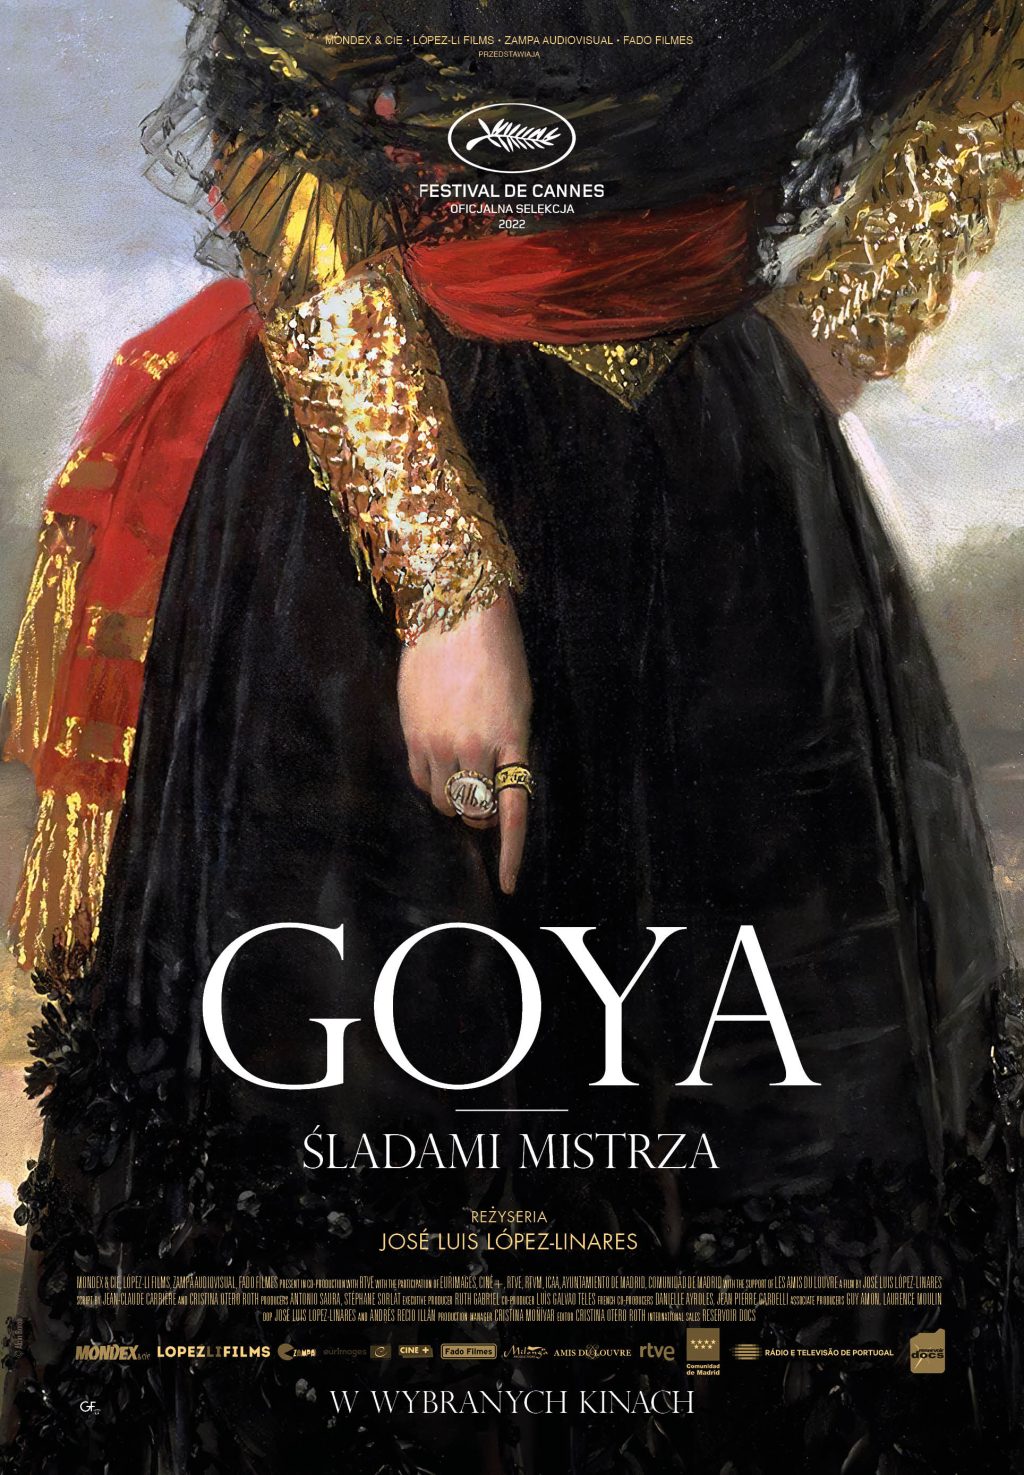 Plakat z fragmentem obrazu, przedstawia kobietę w czarnej sukni, przepasanej czerwoną chustą. Napis "Goya. Śladami mistrza".